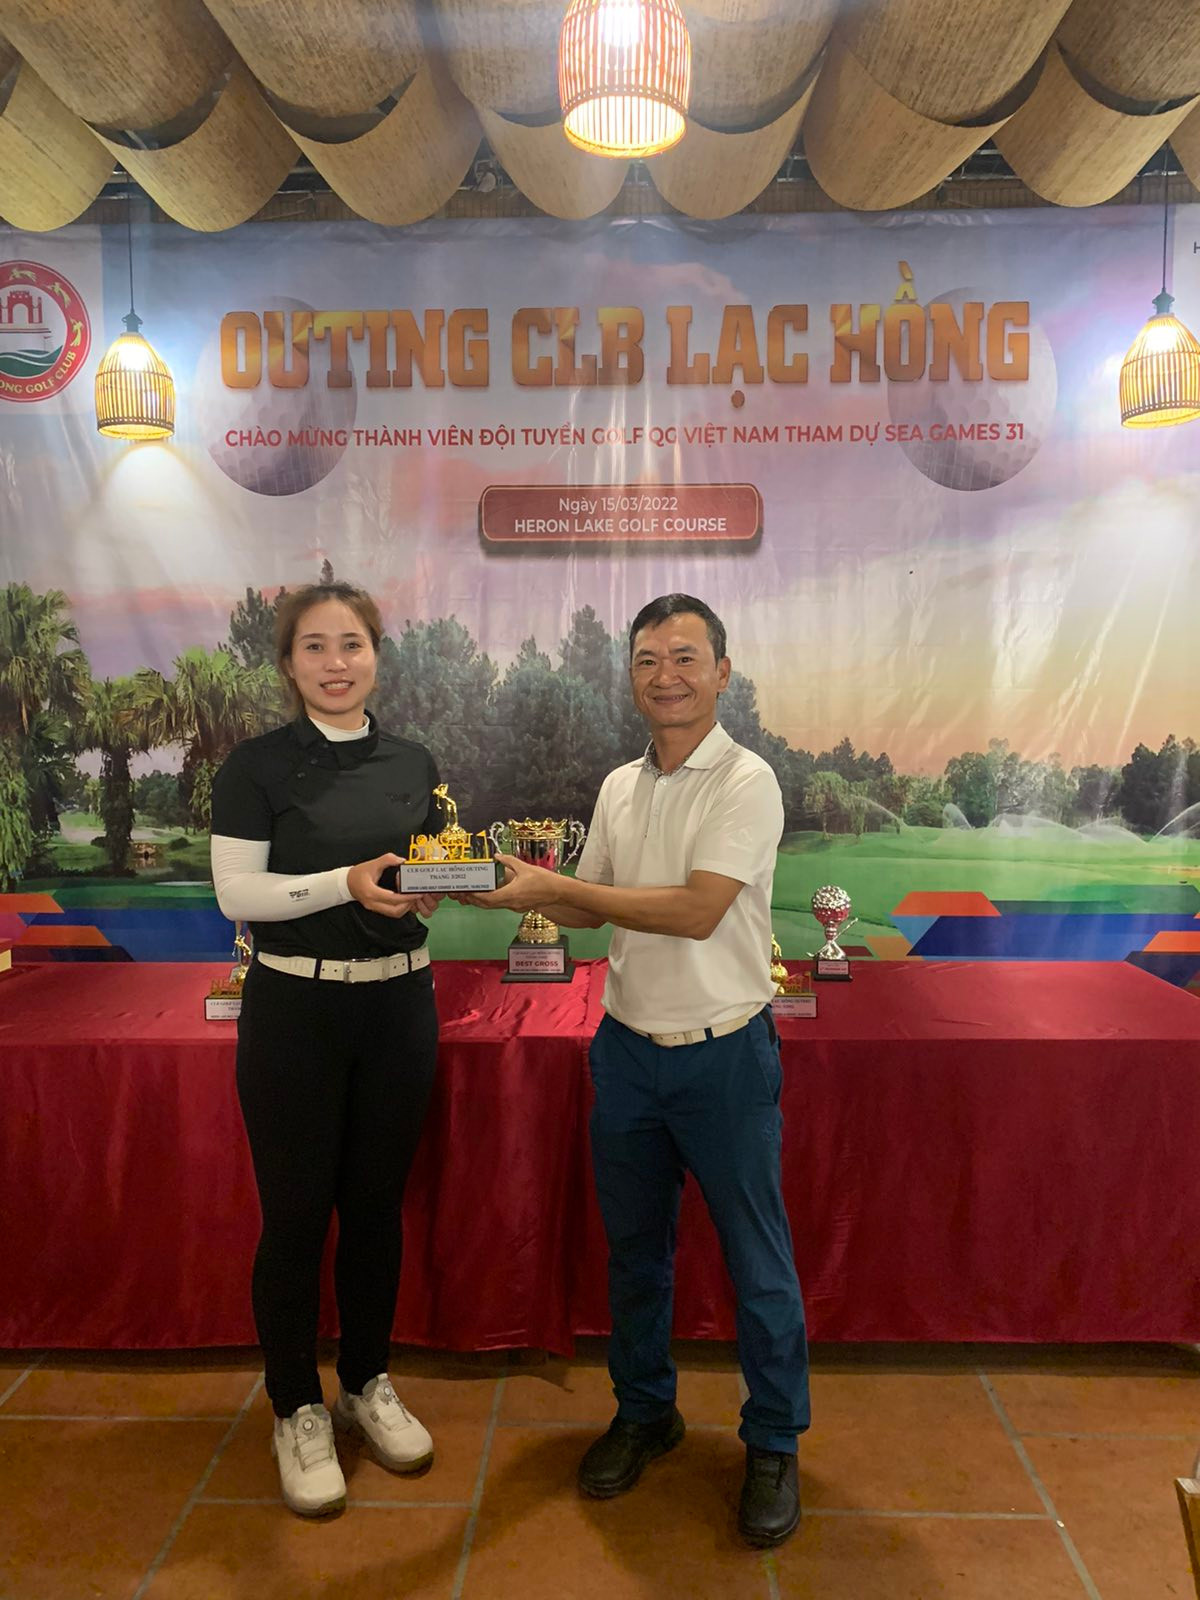 CLB Golf Lạc Hồng tổ chức Outing chúc mừng thành viên tham dự ĐTQG dự SEA Games 31 - Ảnh 2.